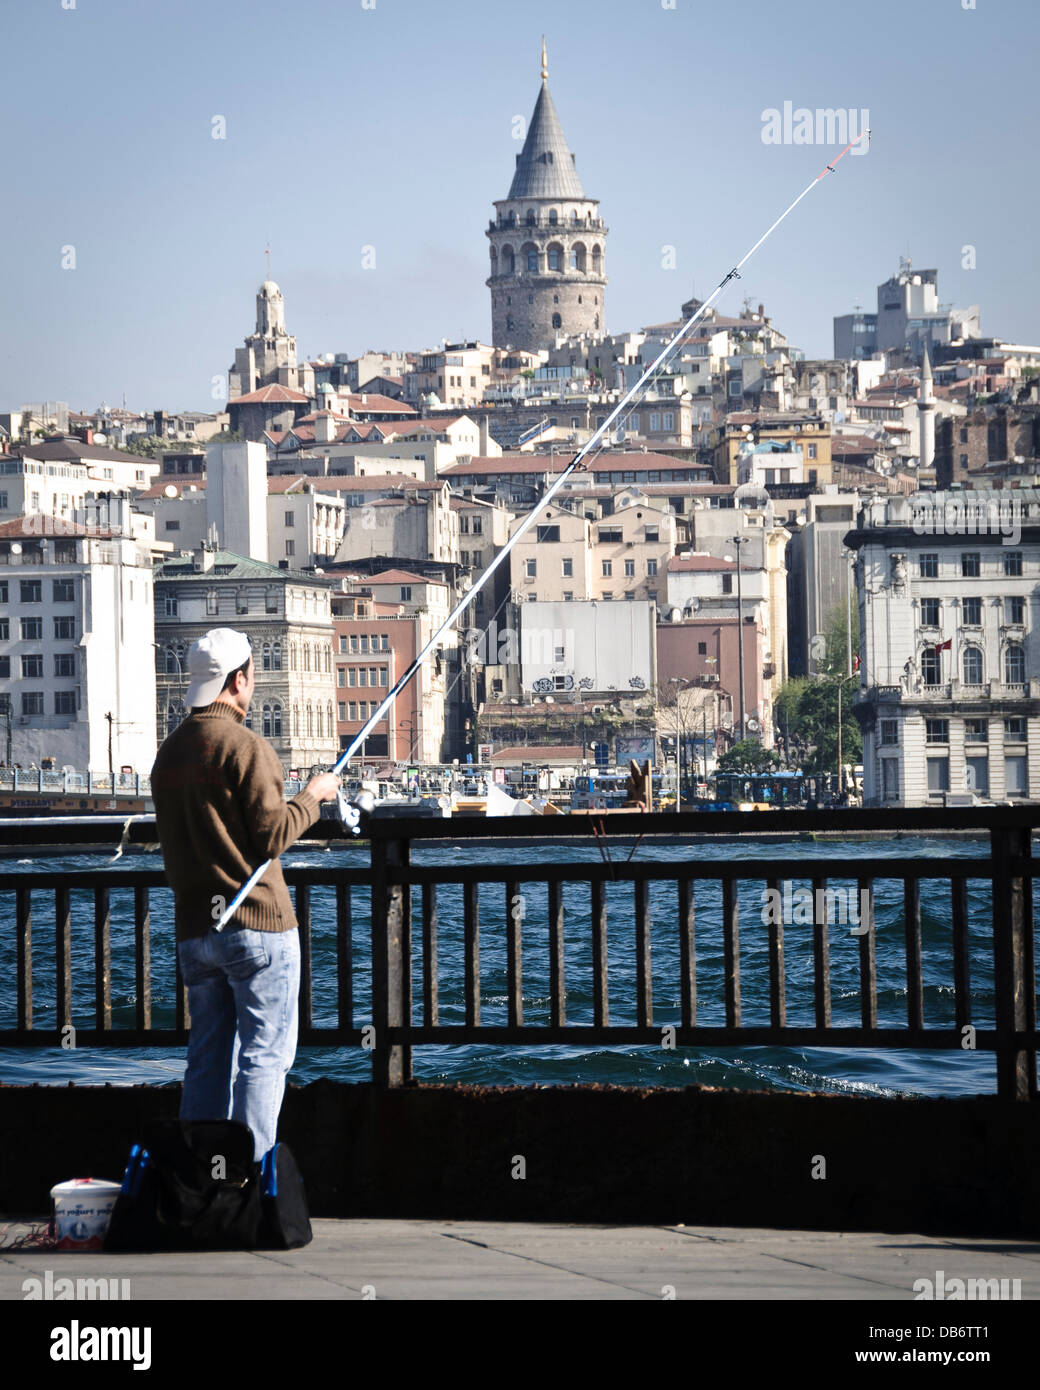 Istanbul, Turquie. L'homme sur le pont de pêche d'Ataturk, la Tour de Galata en arrière-plan. Banque D'Images